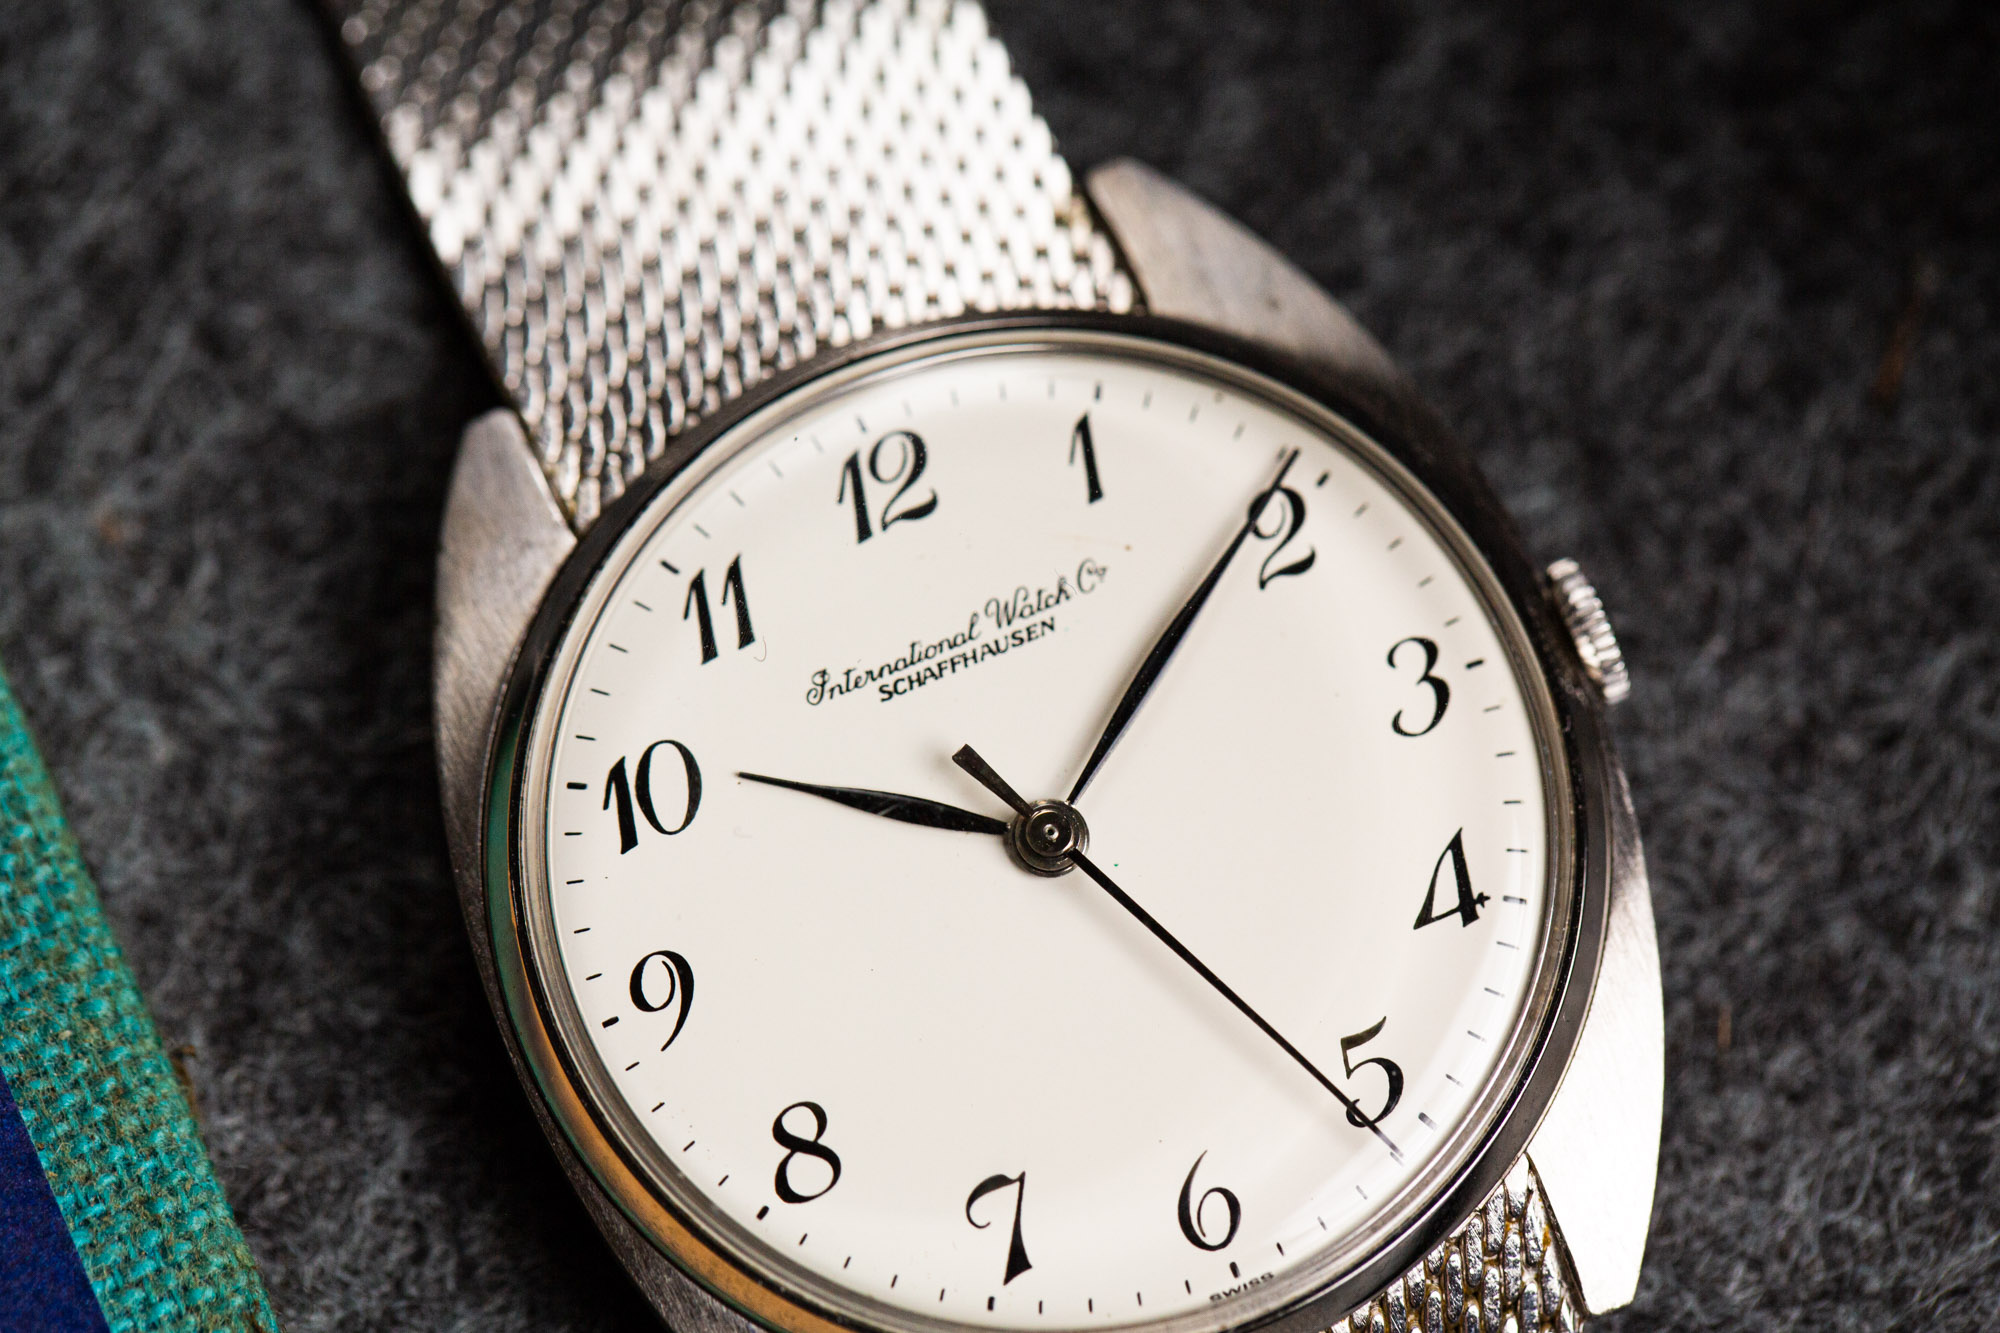 IWC mécanique - Sélection de montres vintage JOSEPH BONNIE